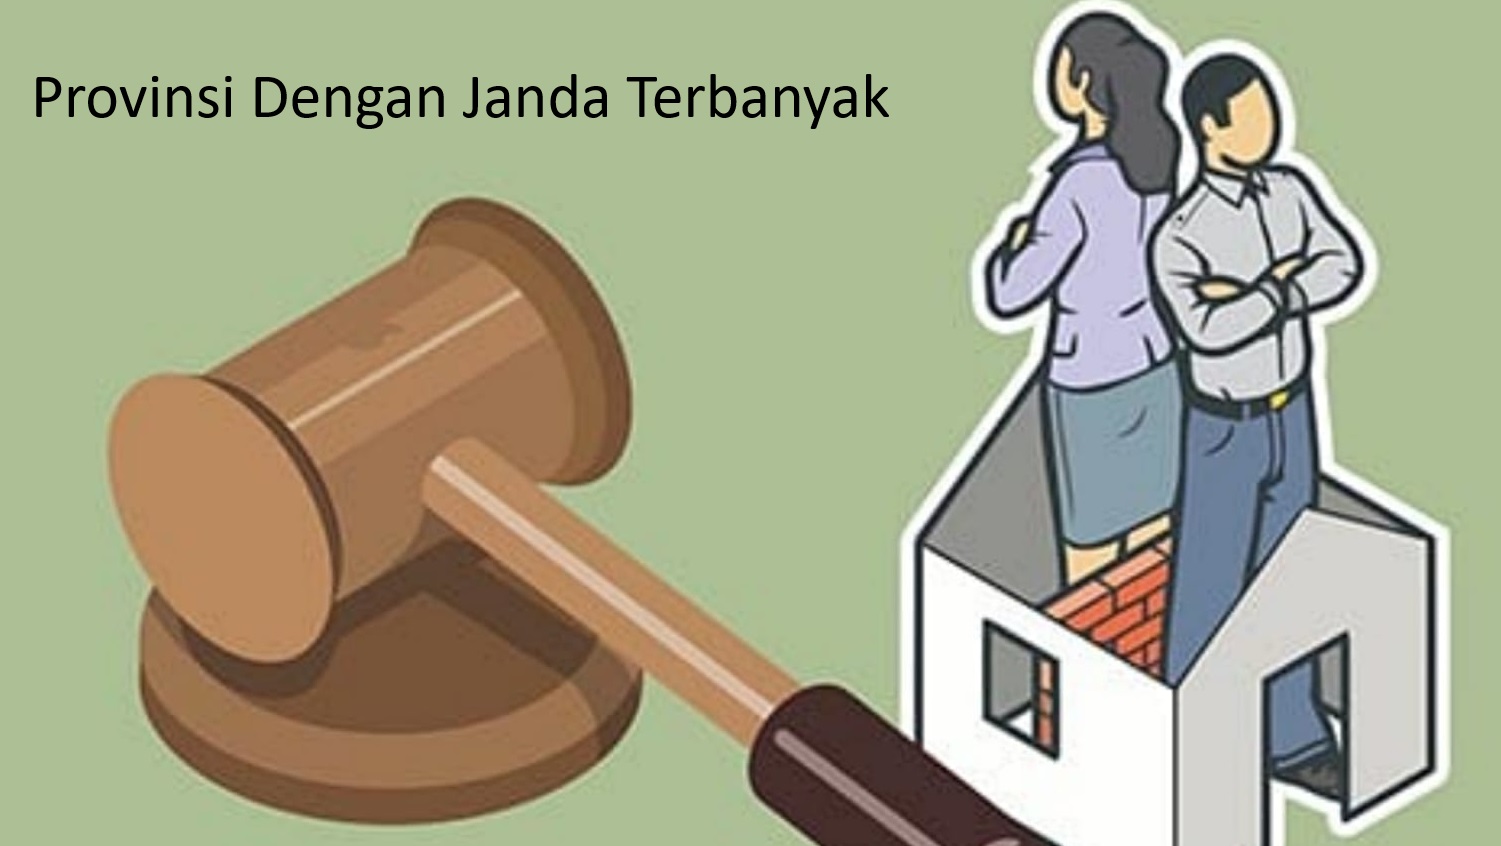 Analisis Mendalam Lonjakan Perceraian di Indonesia: 10 Provinsi dengan Angka Tertinggi dan Penyebab Utama